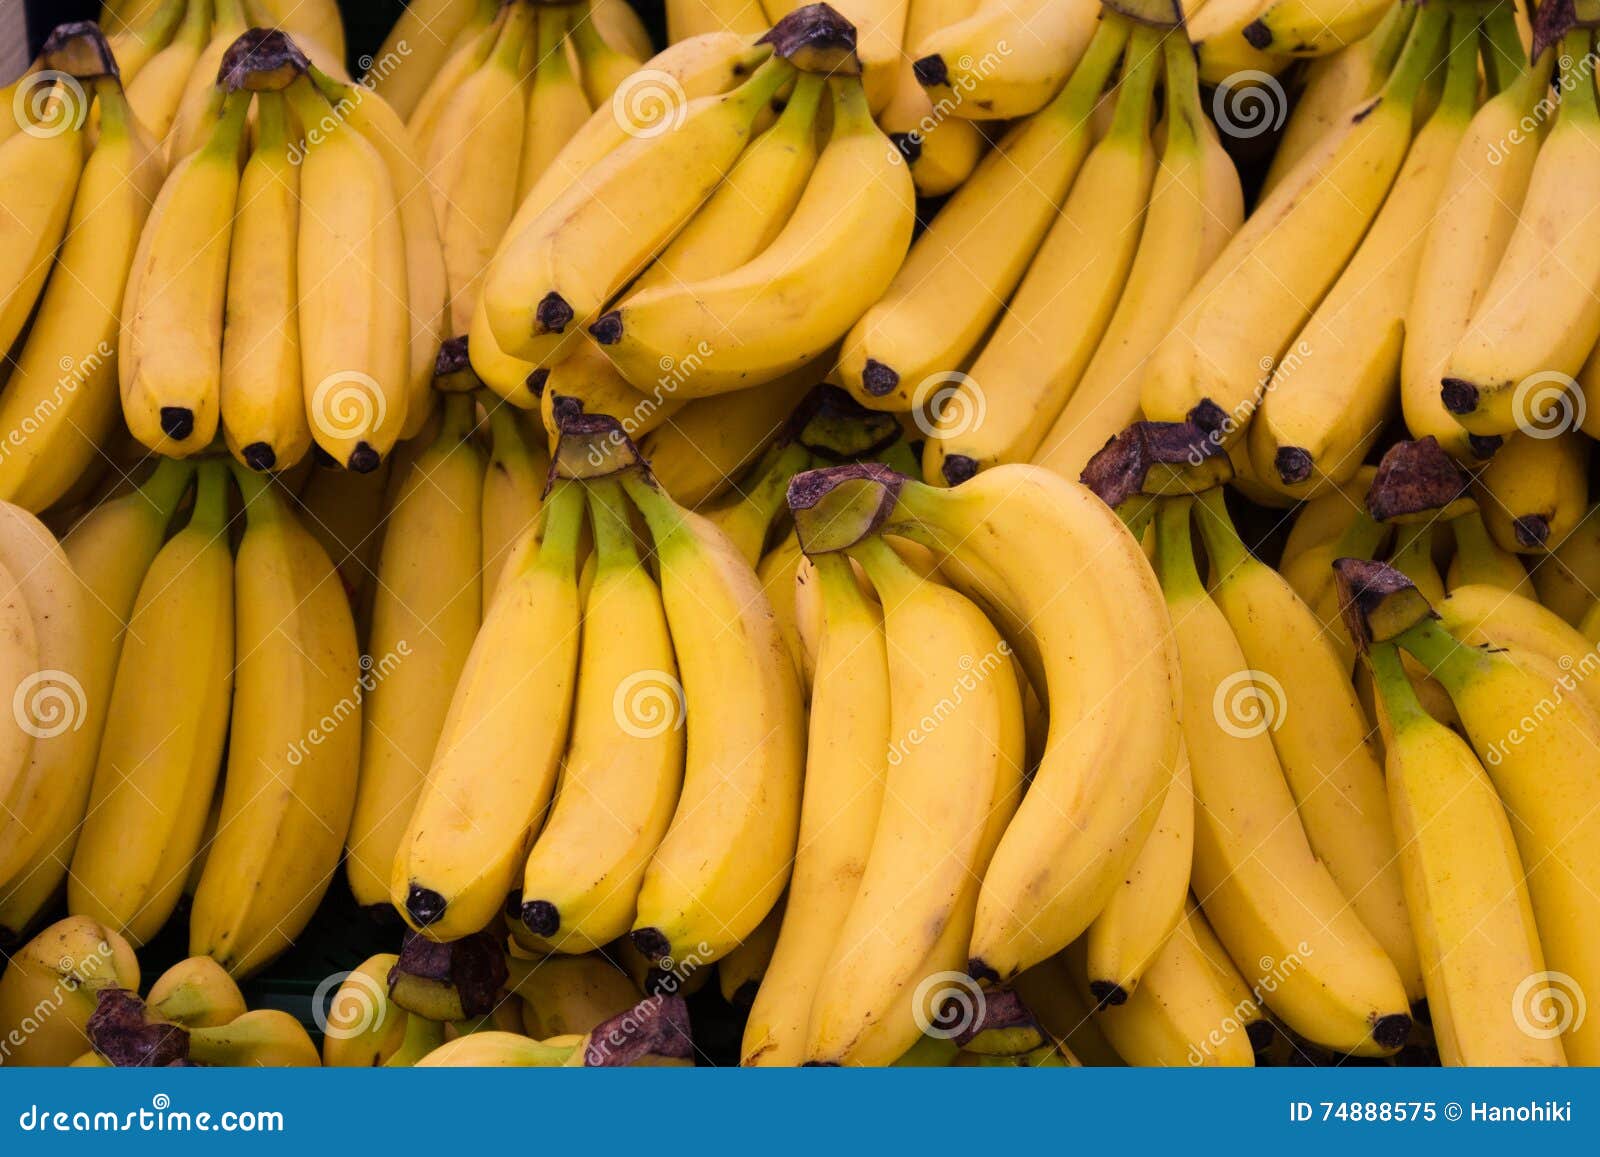 Fruits de banane - fond de nourriture